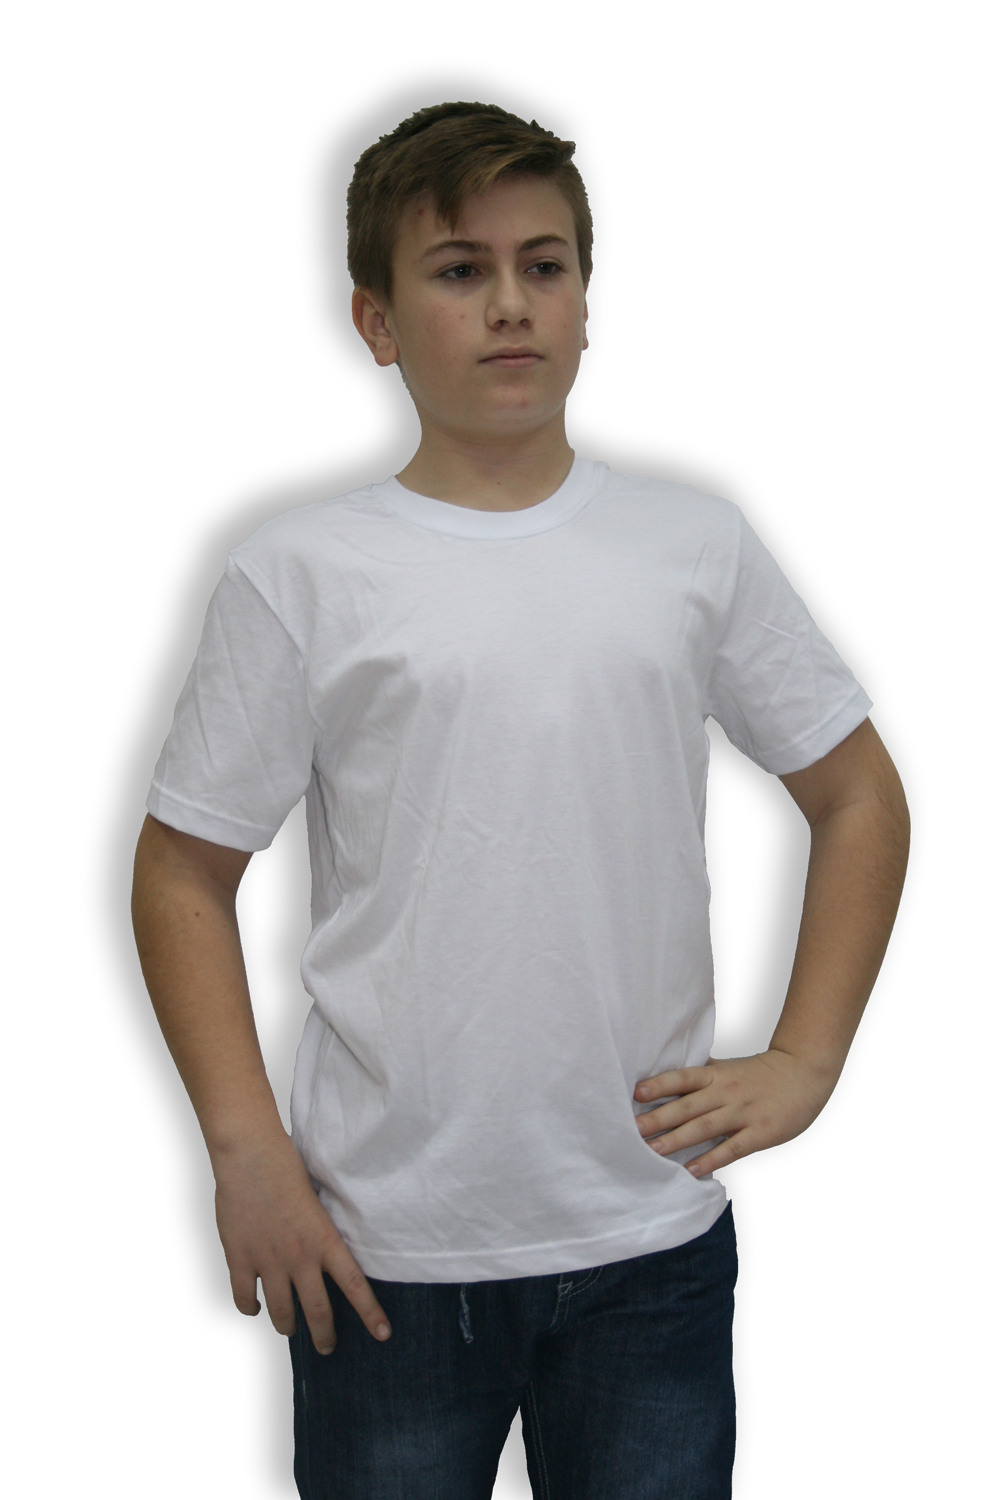 חולצה טריקו לבנה לילדים 165 גרם.
מידות 6-16. 